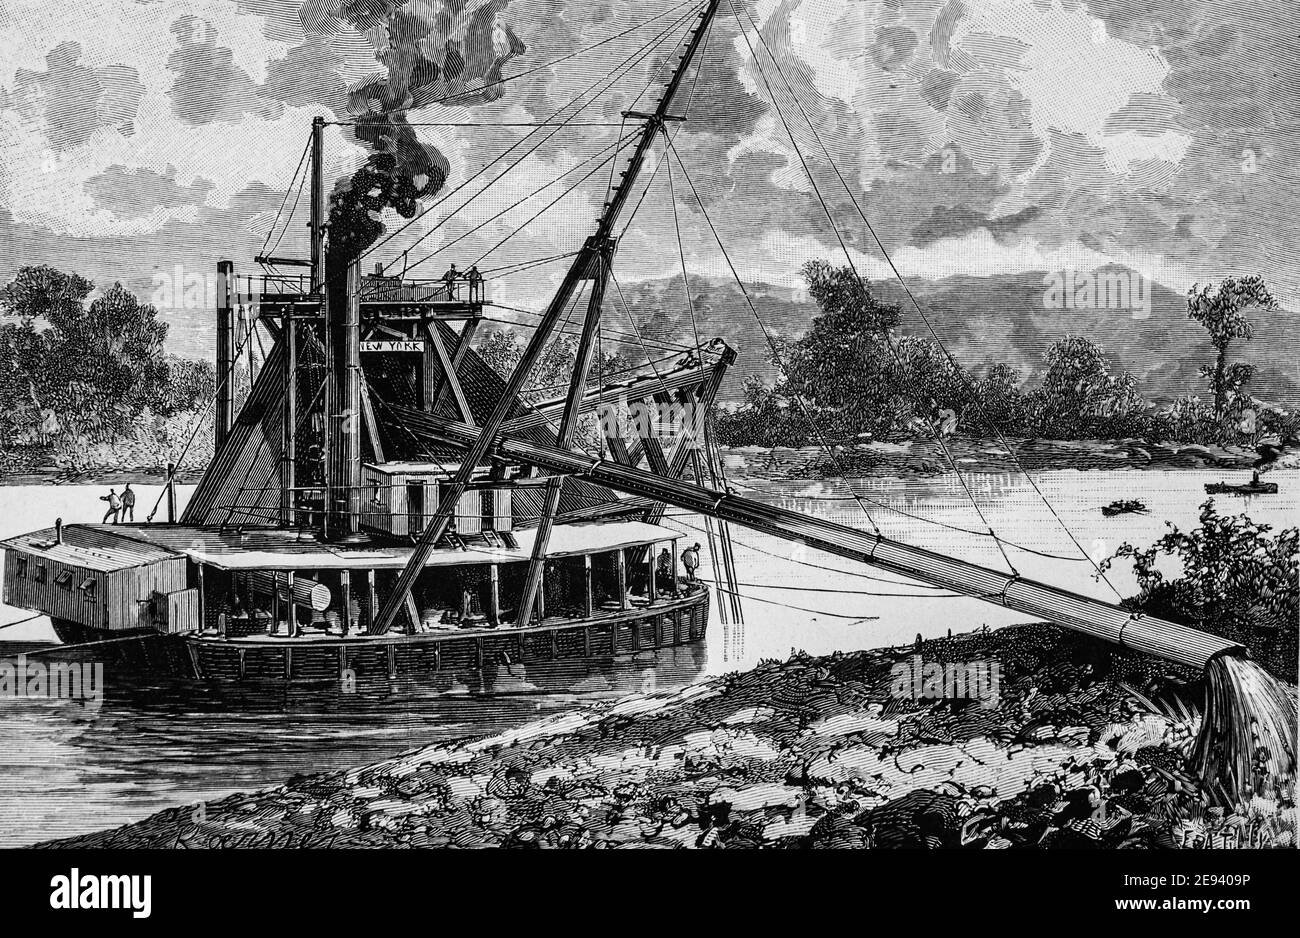 Drague americaine, les grands travaux du siecle par dumont, hachette 1895 Stockfoto